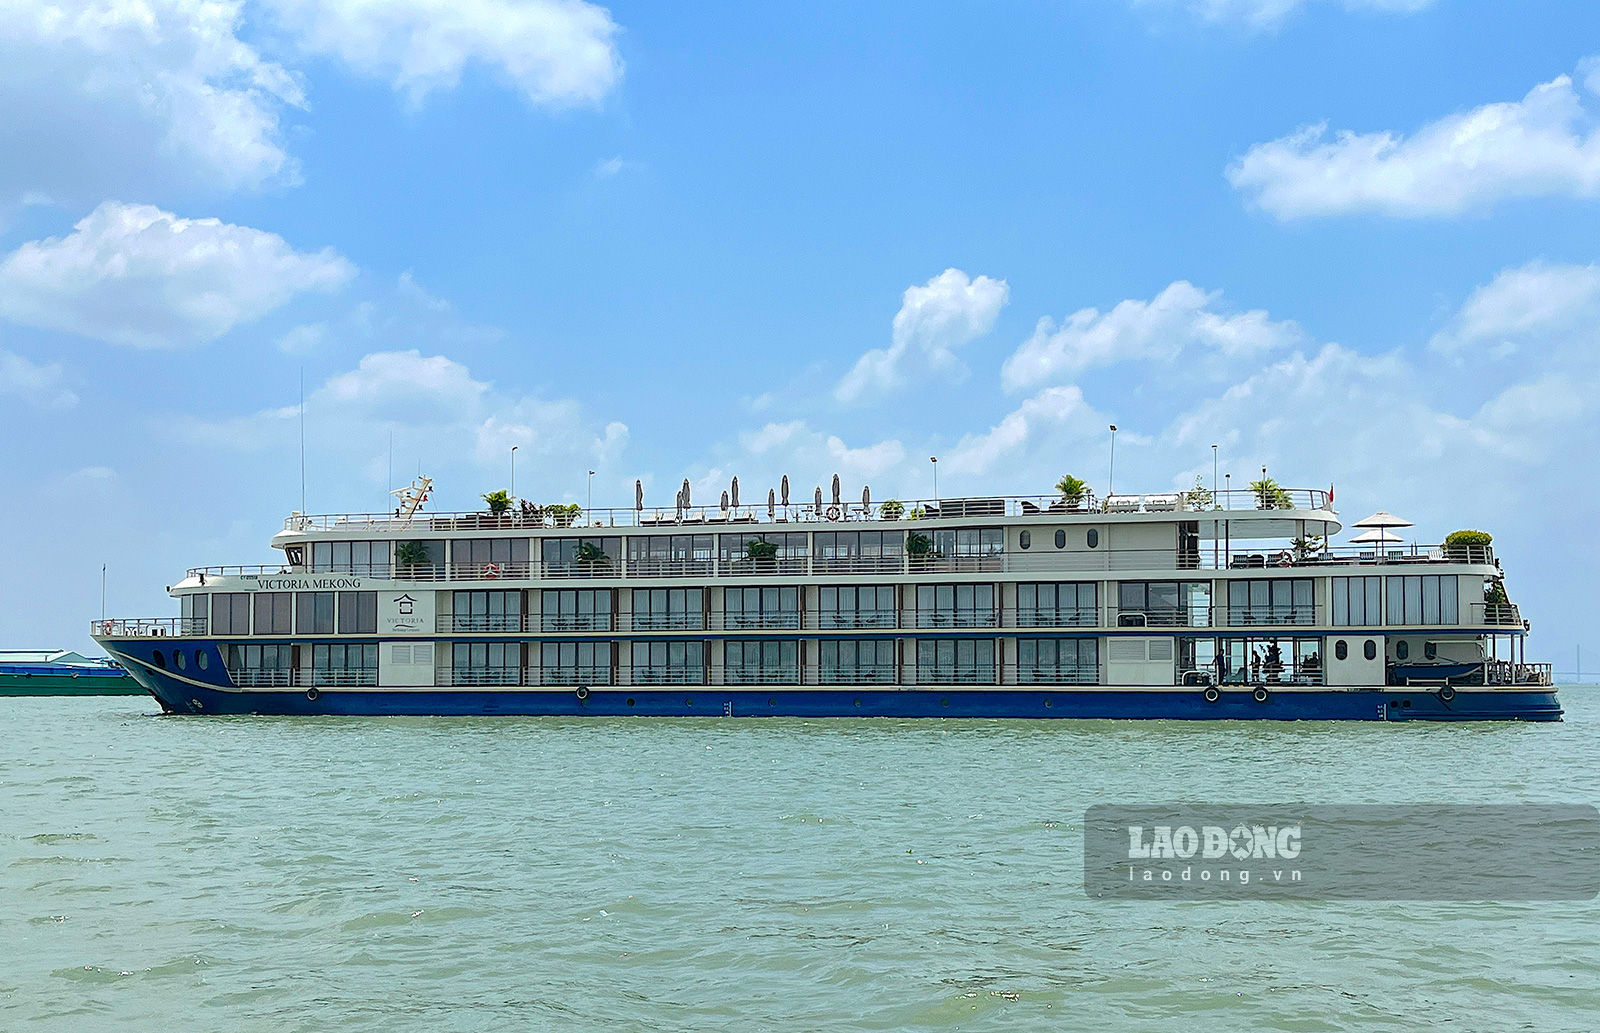 Victoria Mekong là một trong những du thuyền sang trọng đang hoạt động tại miền Tây, nhìn từ xa, con tàu 4 tầng như một khách sạn 4 sao nổi trên sông với view 360 độ nhìn toàn cảnh dòng Mekong hùng vĩ.